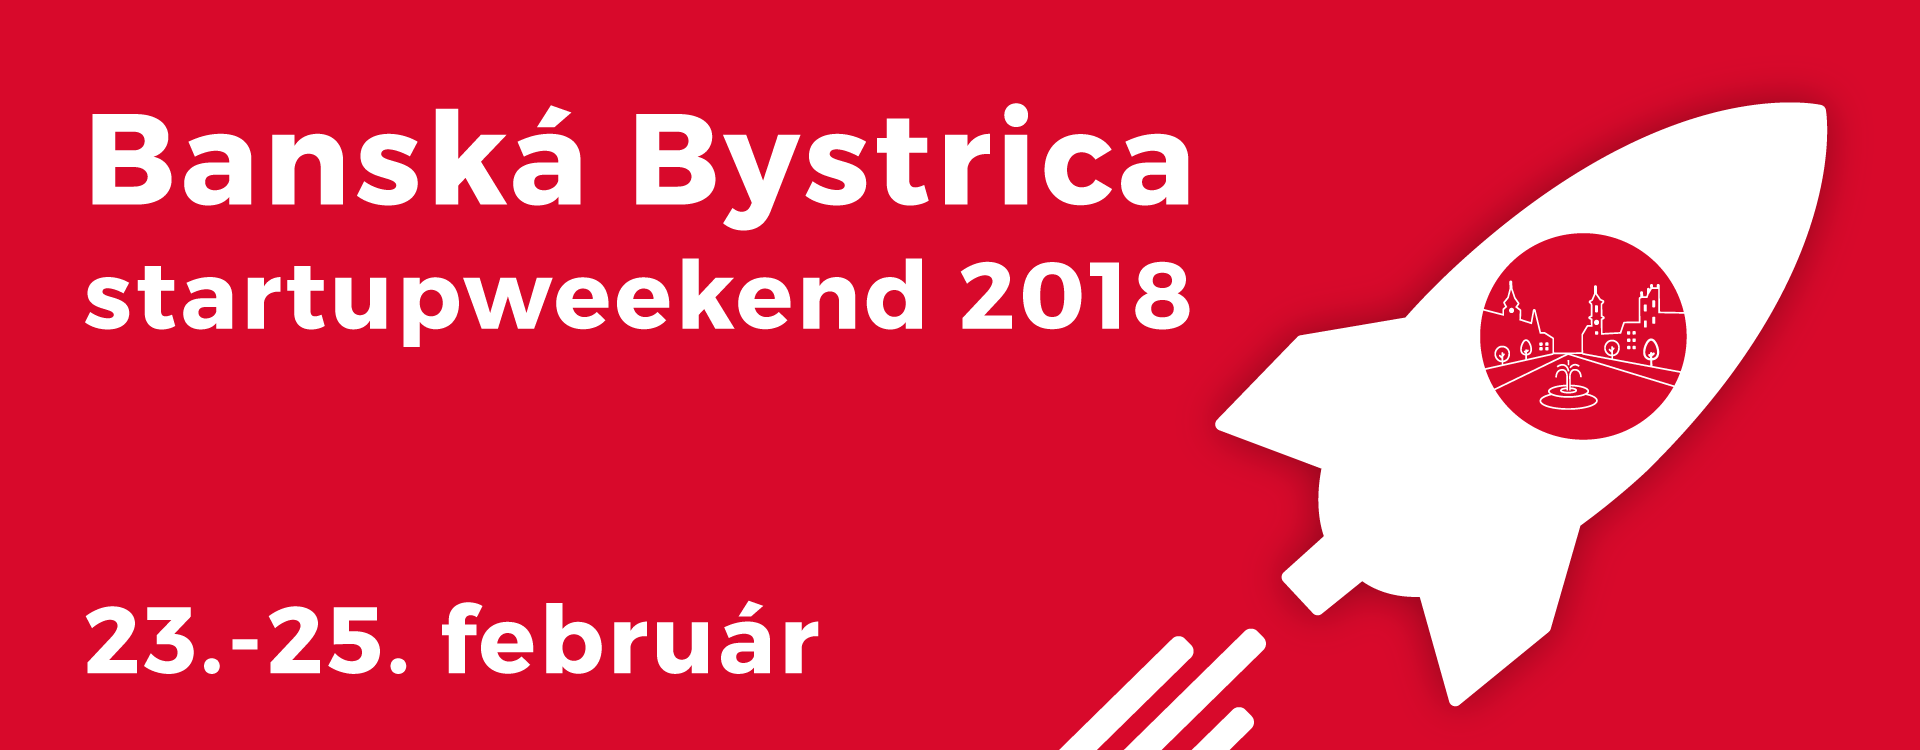 Startup weekend Banská Bystrica 2018